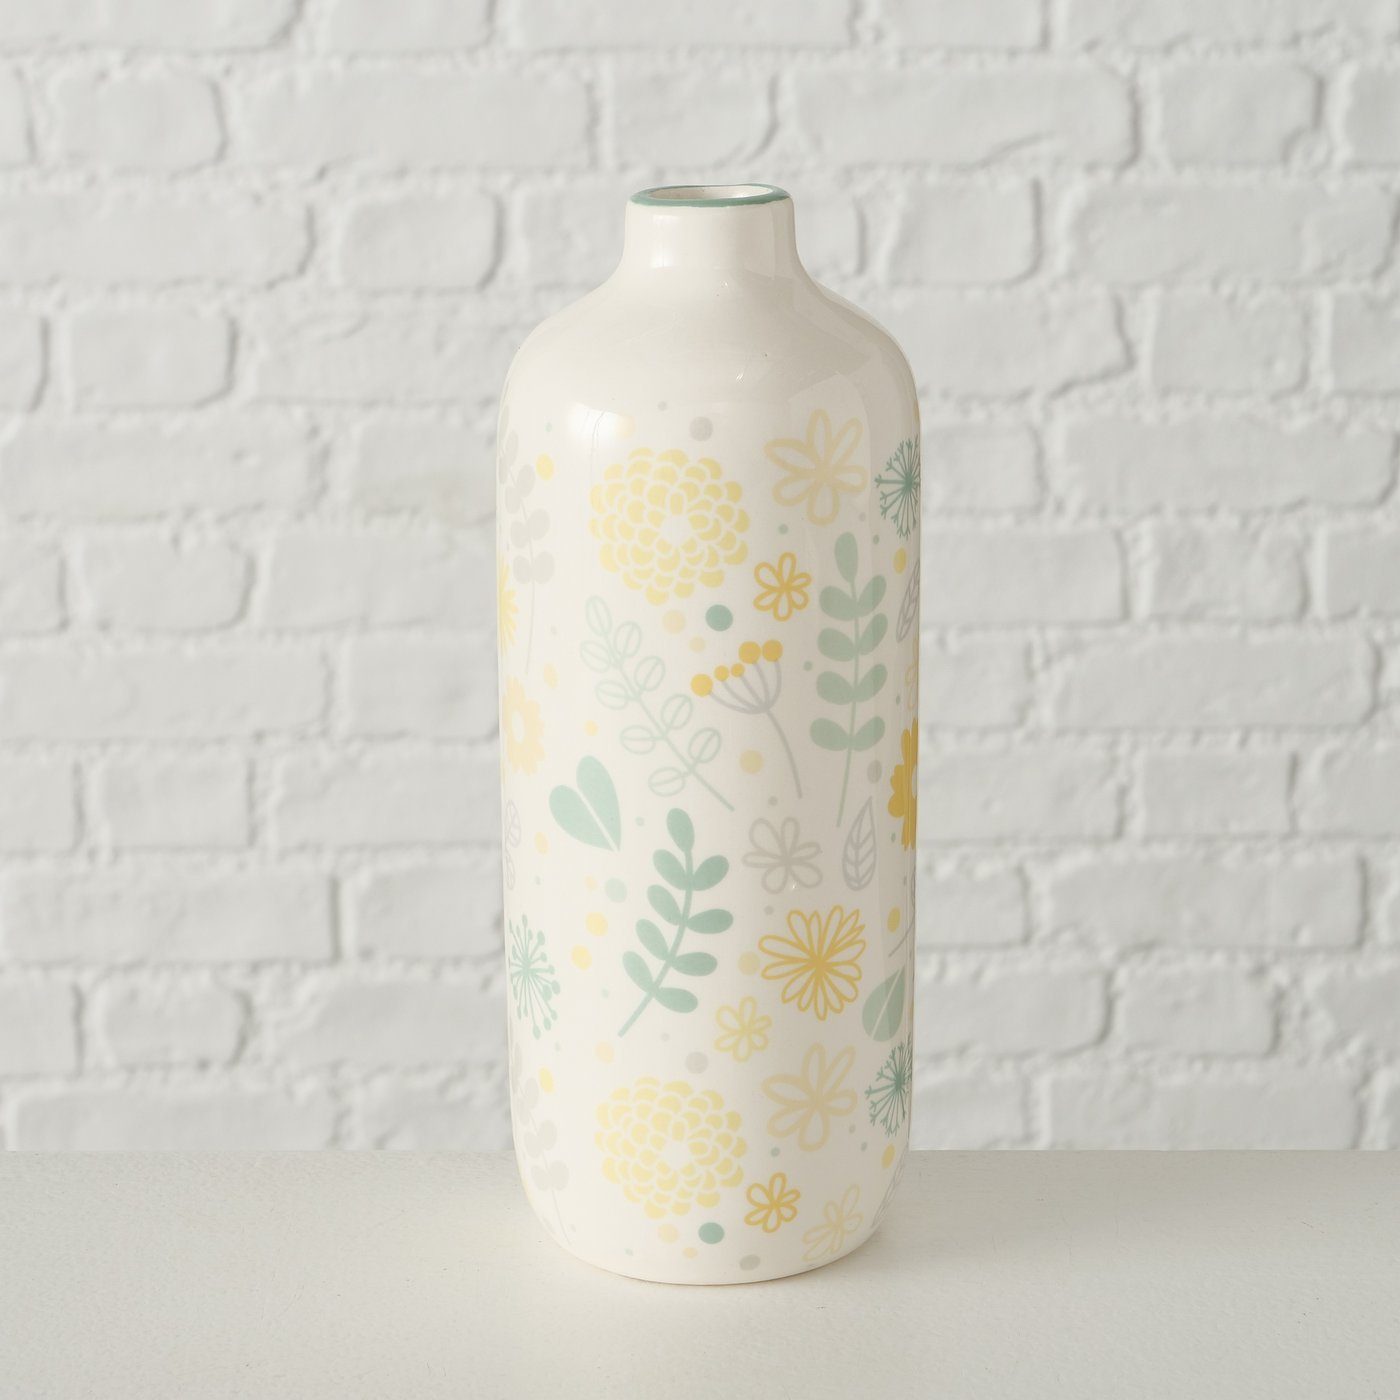 BOLTZE Dekovase 2er Set "Linga" in St) aus Keramik beige/gelb/grün, Vase Blumenvase (2